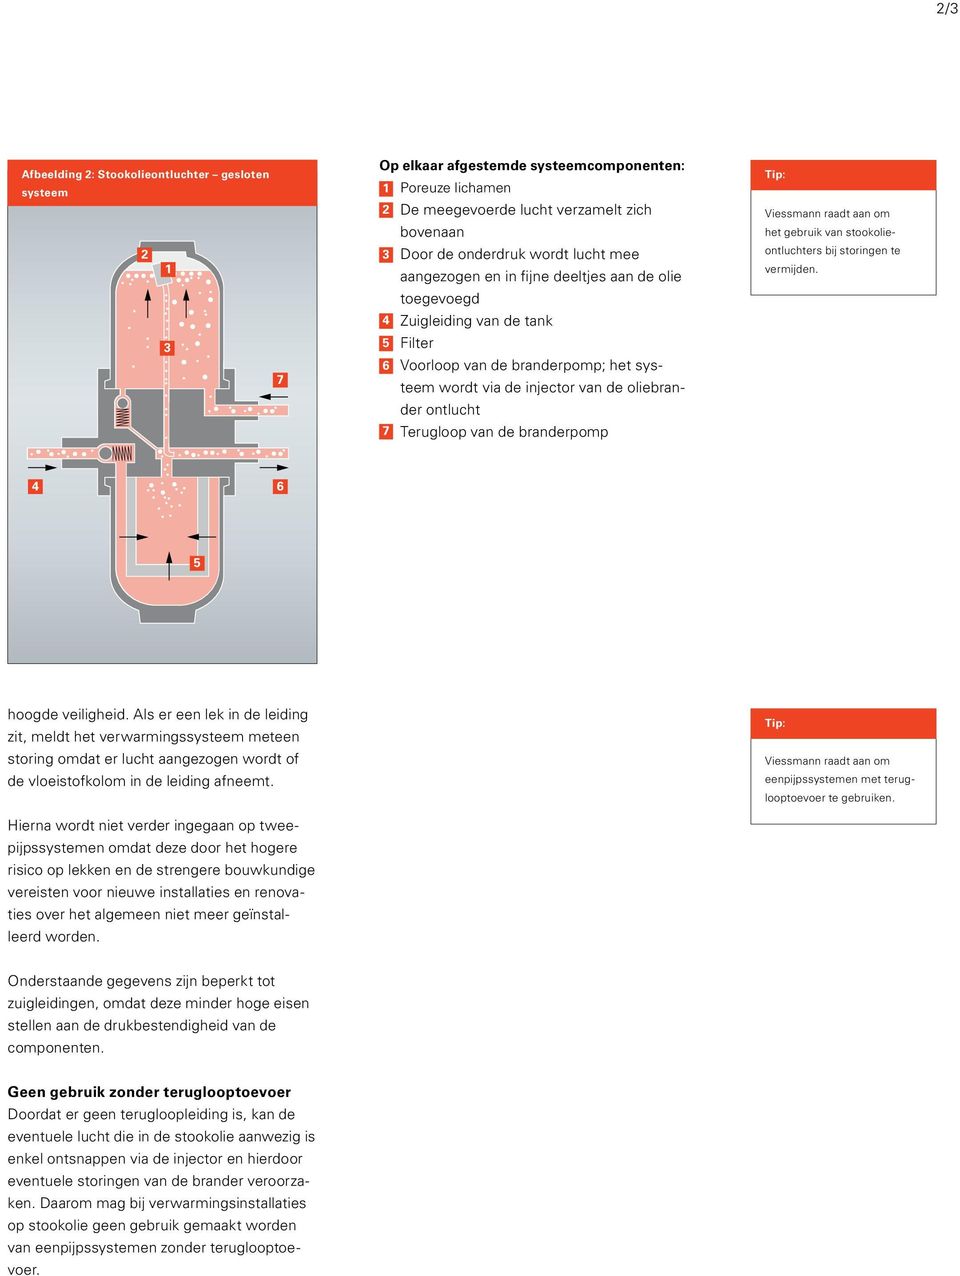 Terugloop van de branderpomp Tip: Viessmann raadt aan om het gebruik van stookolieontluchters bij storingen te vermijden. 4 6 5 hoogde veiligheid.